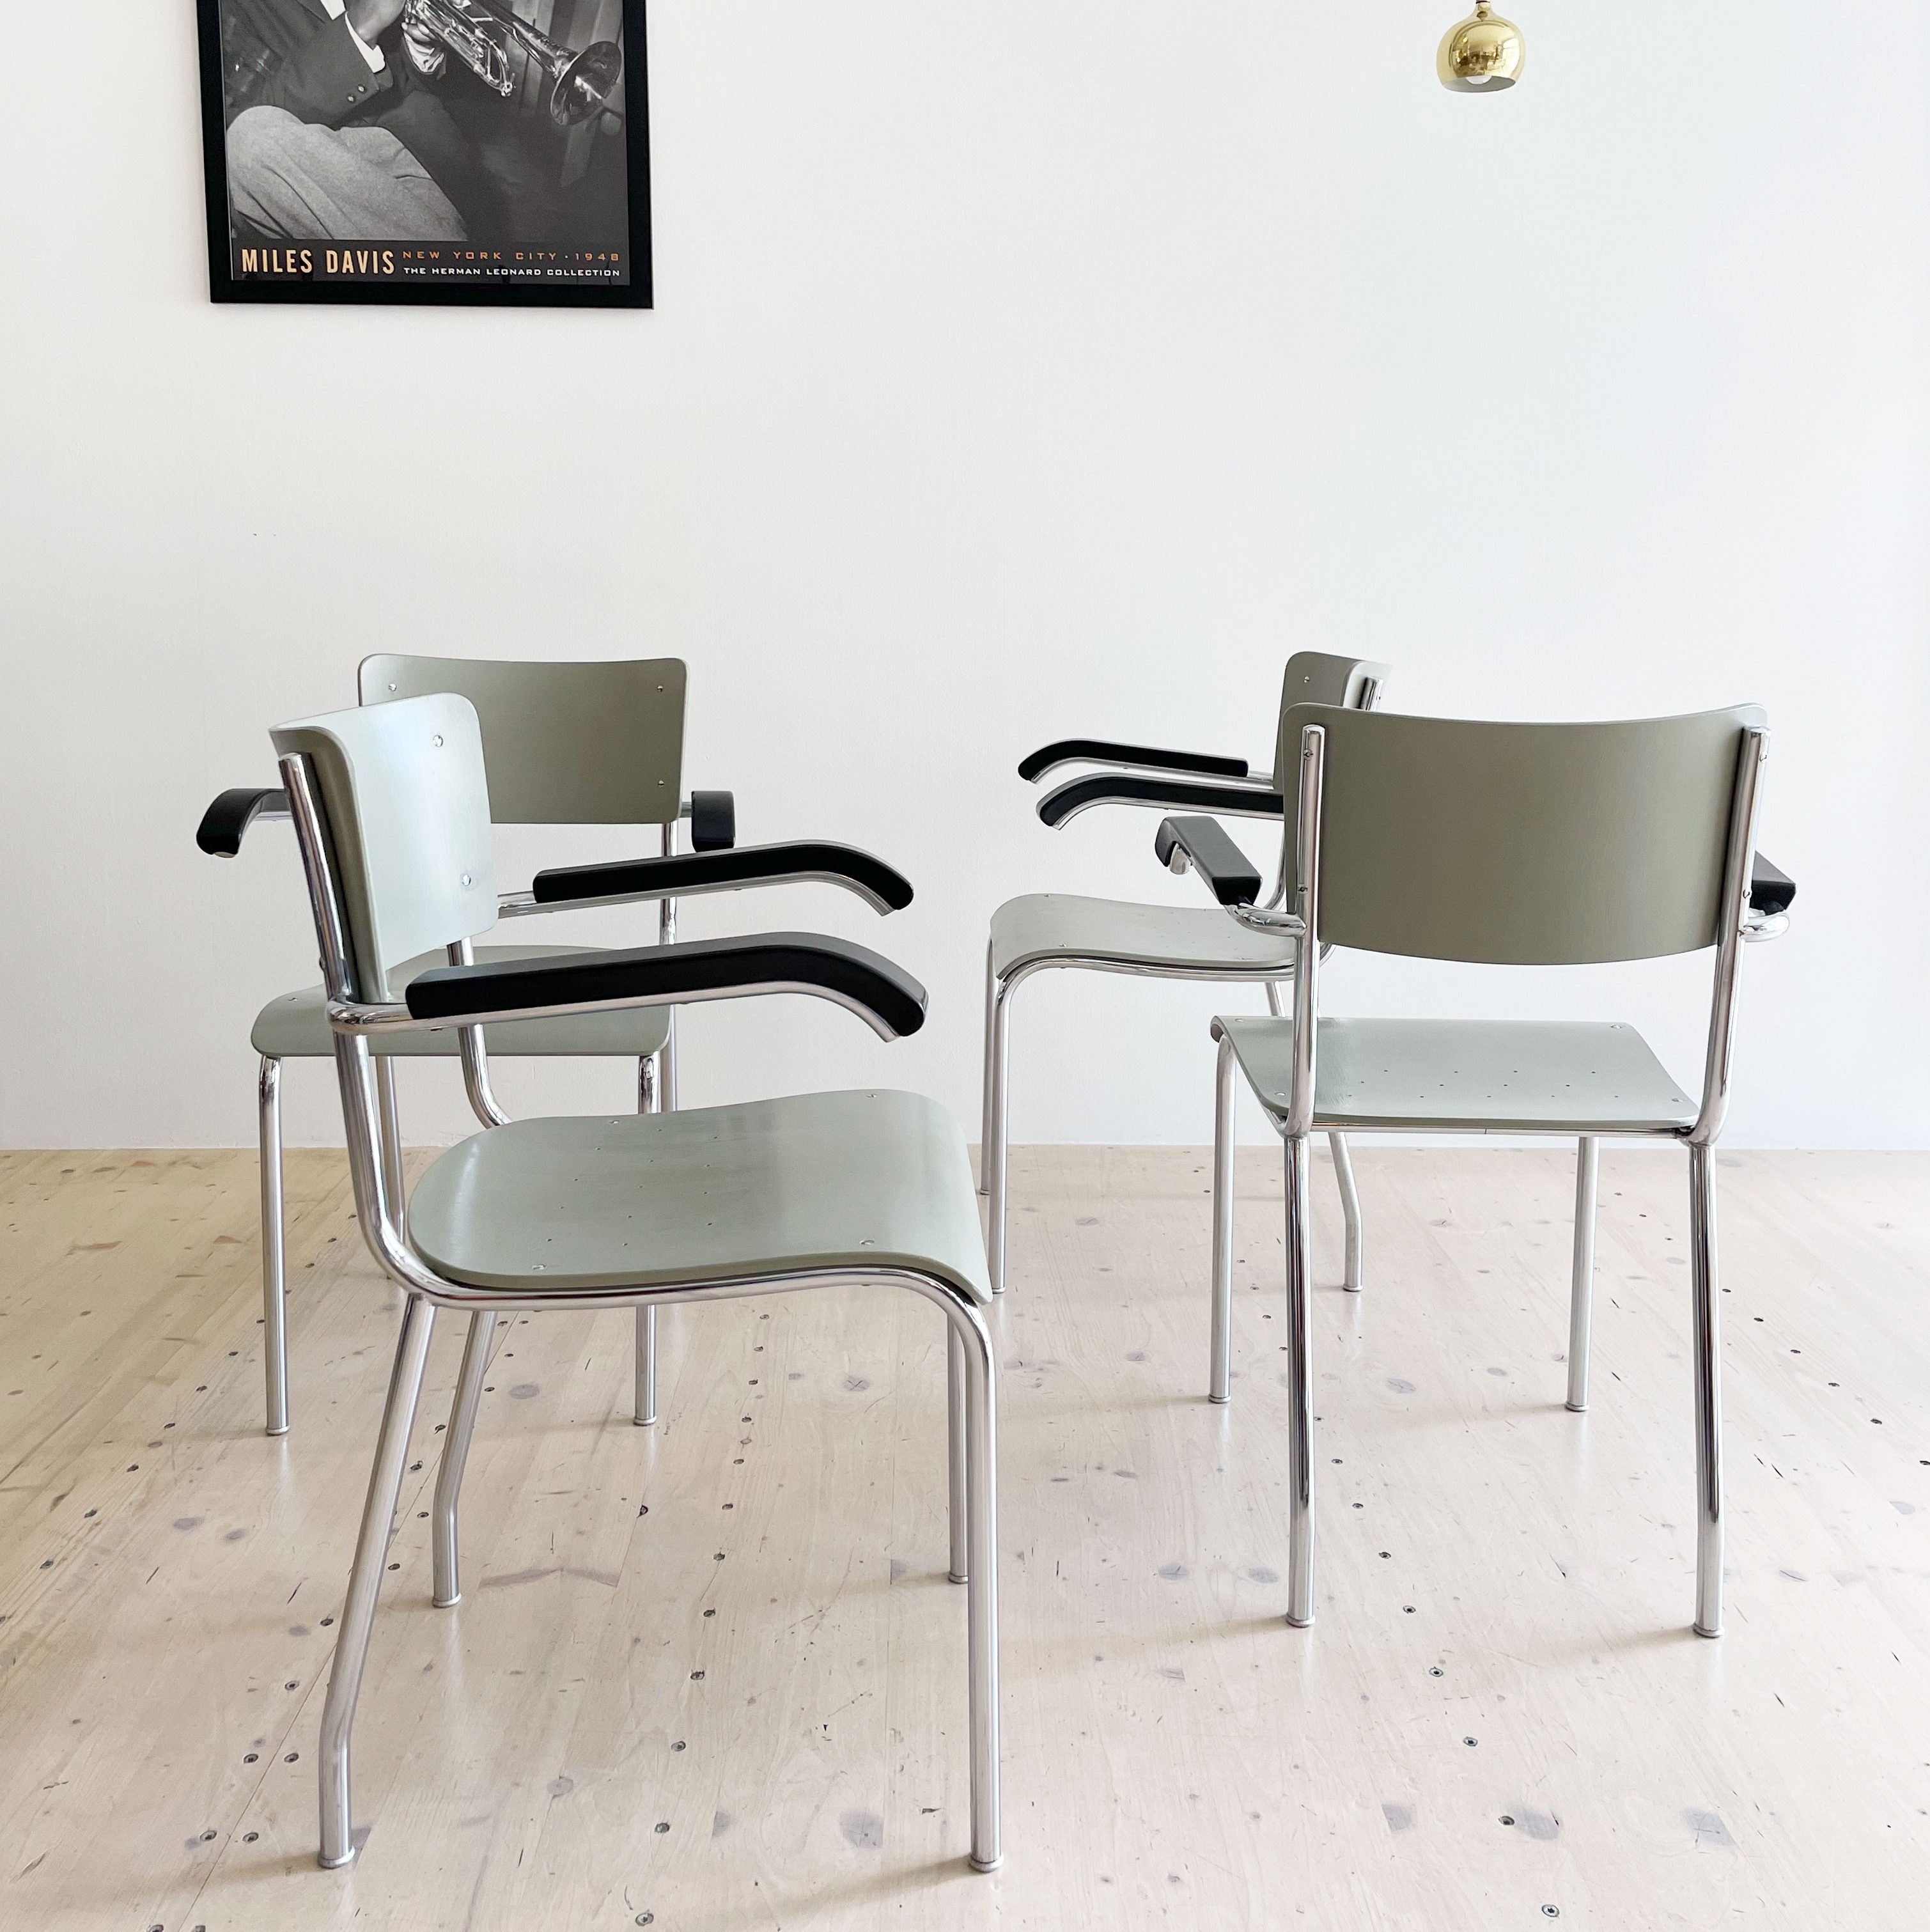 Bigla Dining Chair Set. Made in Switzerland in the 1950s. Available at heyday möbel, Grubenstrasse 19, 8045 Zürich, Switzerland. Mid-Century Modern Furniture and Other Stuff.